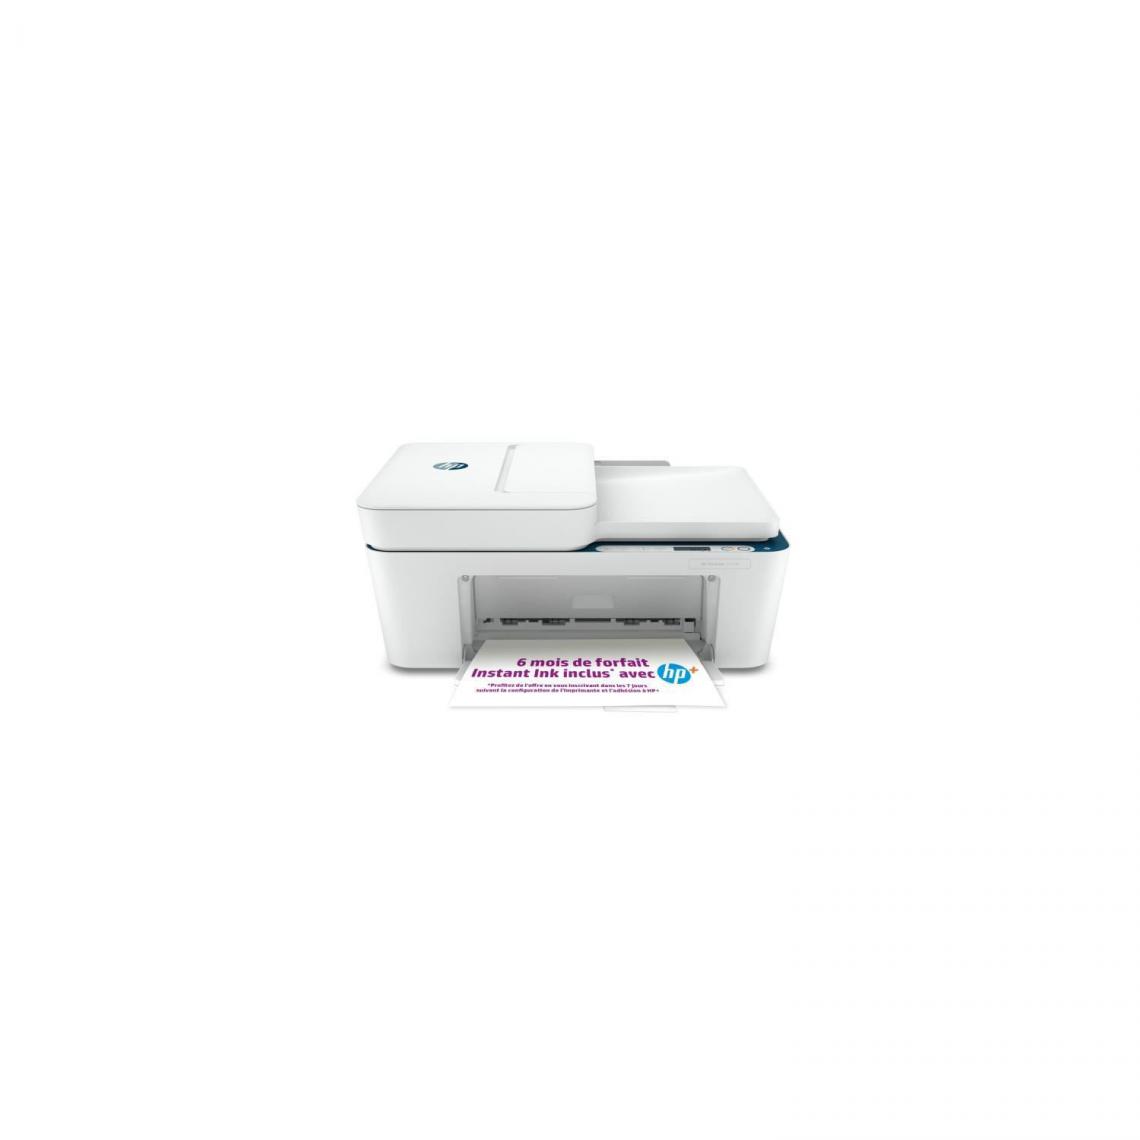 Hp - Imprimante HP tout-en-un jet d'encre couleur - DeskJet Plus 4130e - Idéal pour la famille - 6 mois d'Instant Ink inclus avec HP+ - Imprimante Jet d'encre